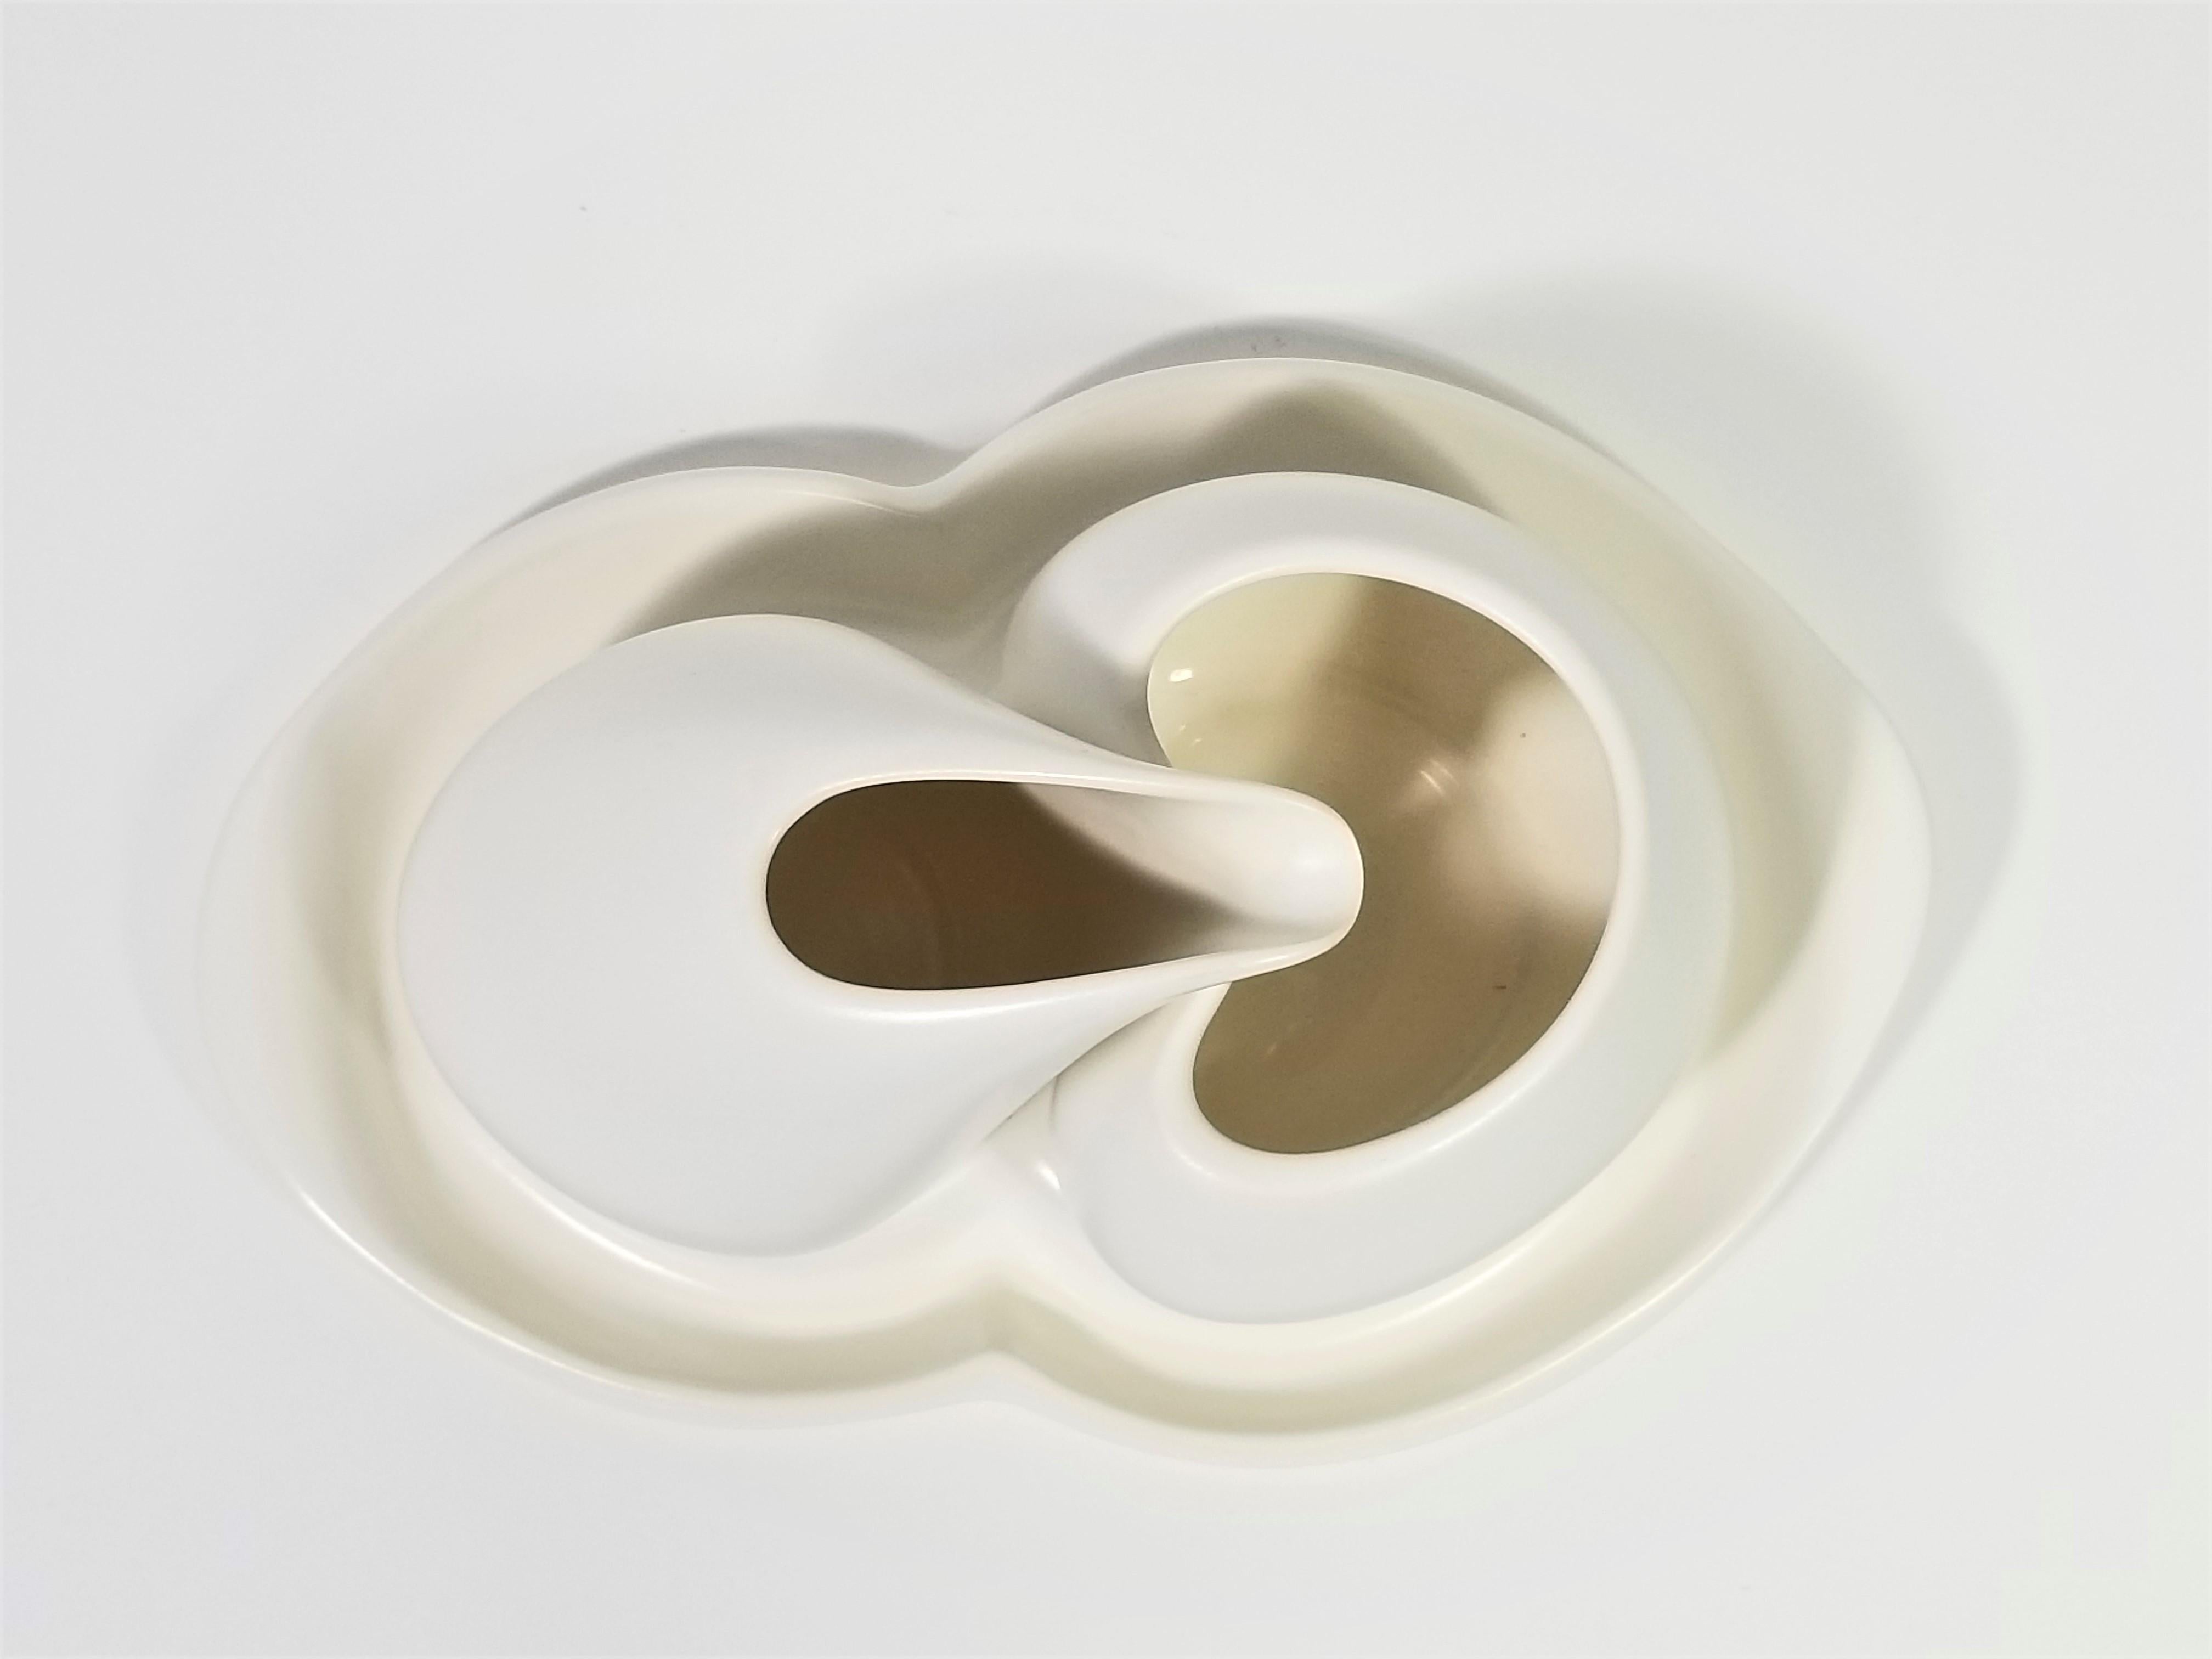 Porcelain Artist Signed Sculptural Modernist Cream and Sugar Set For Sale 4